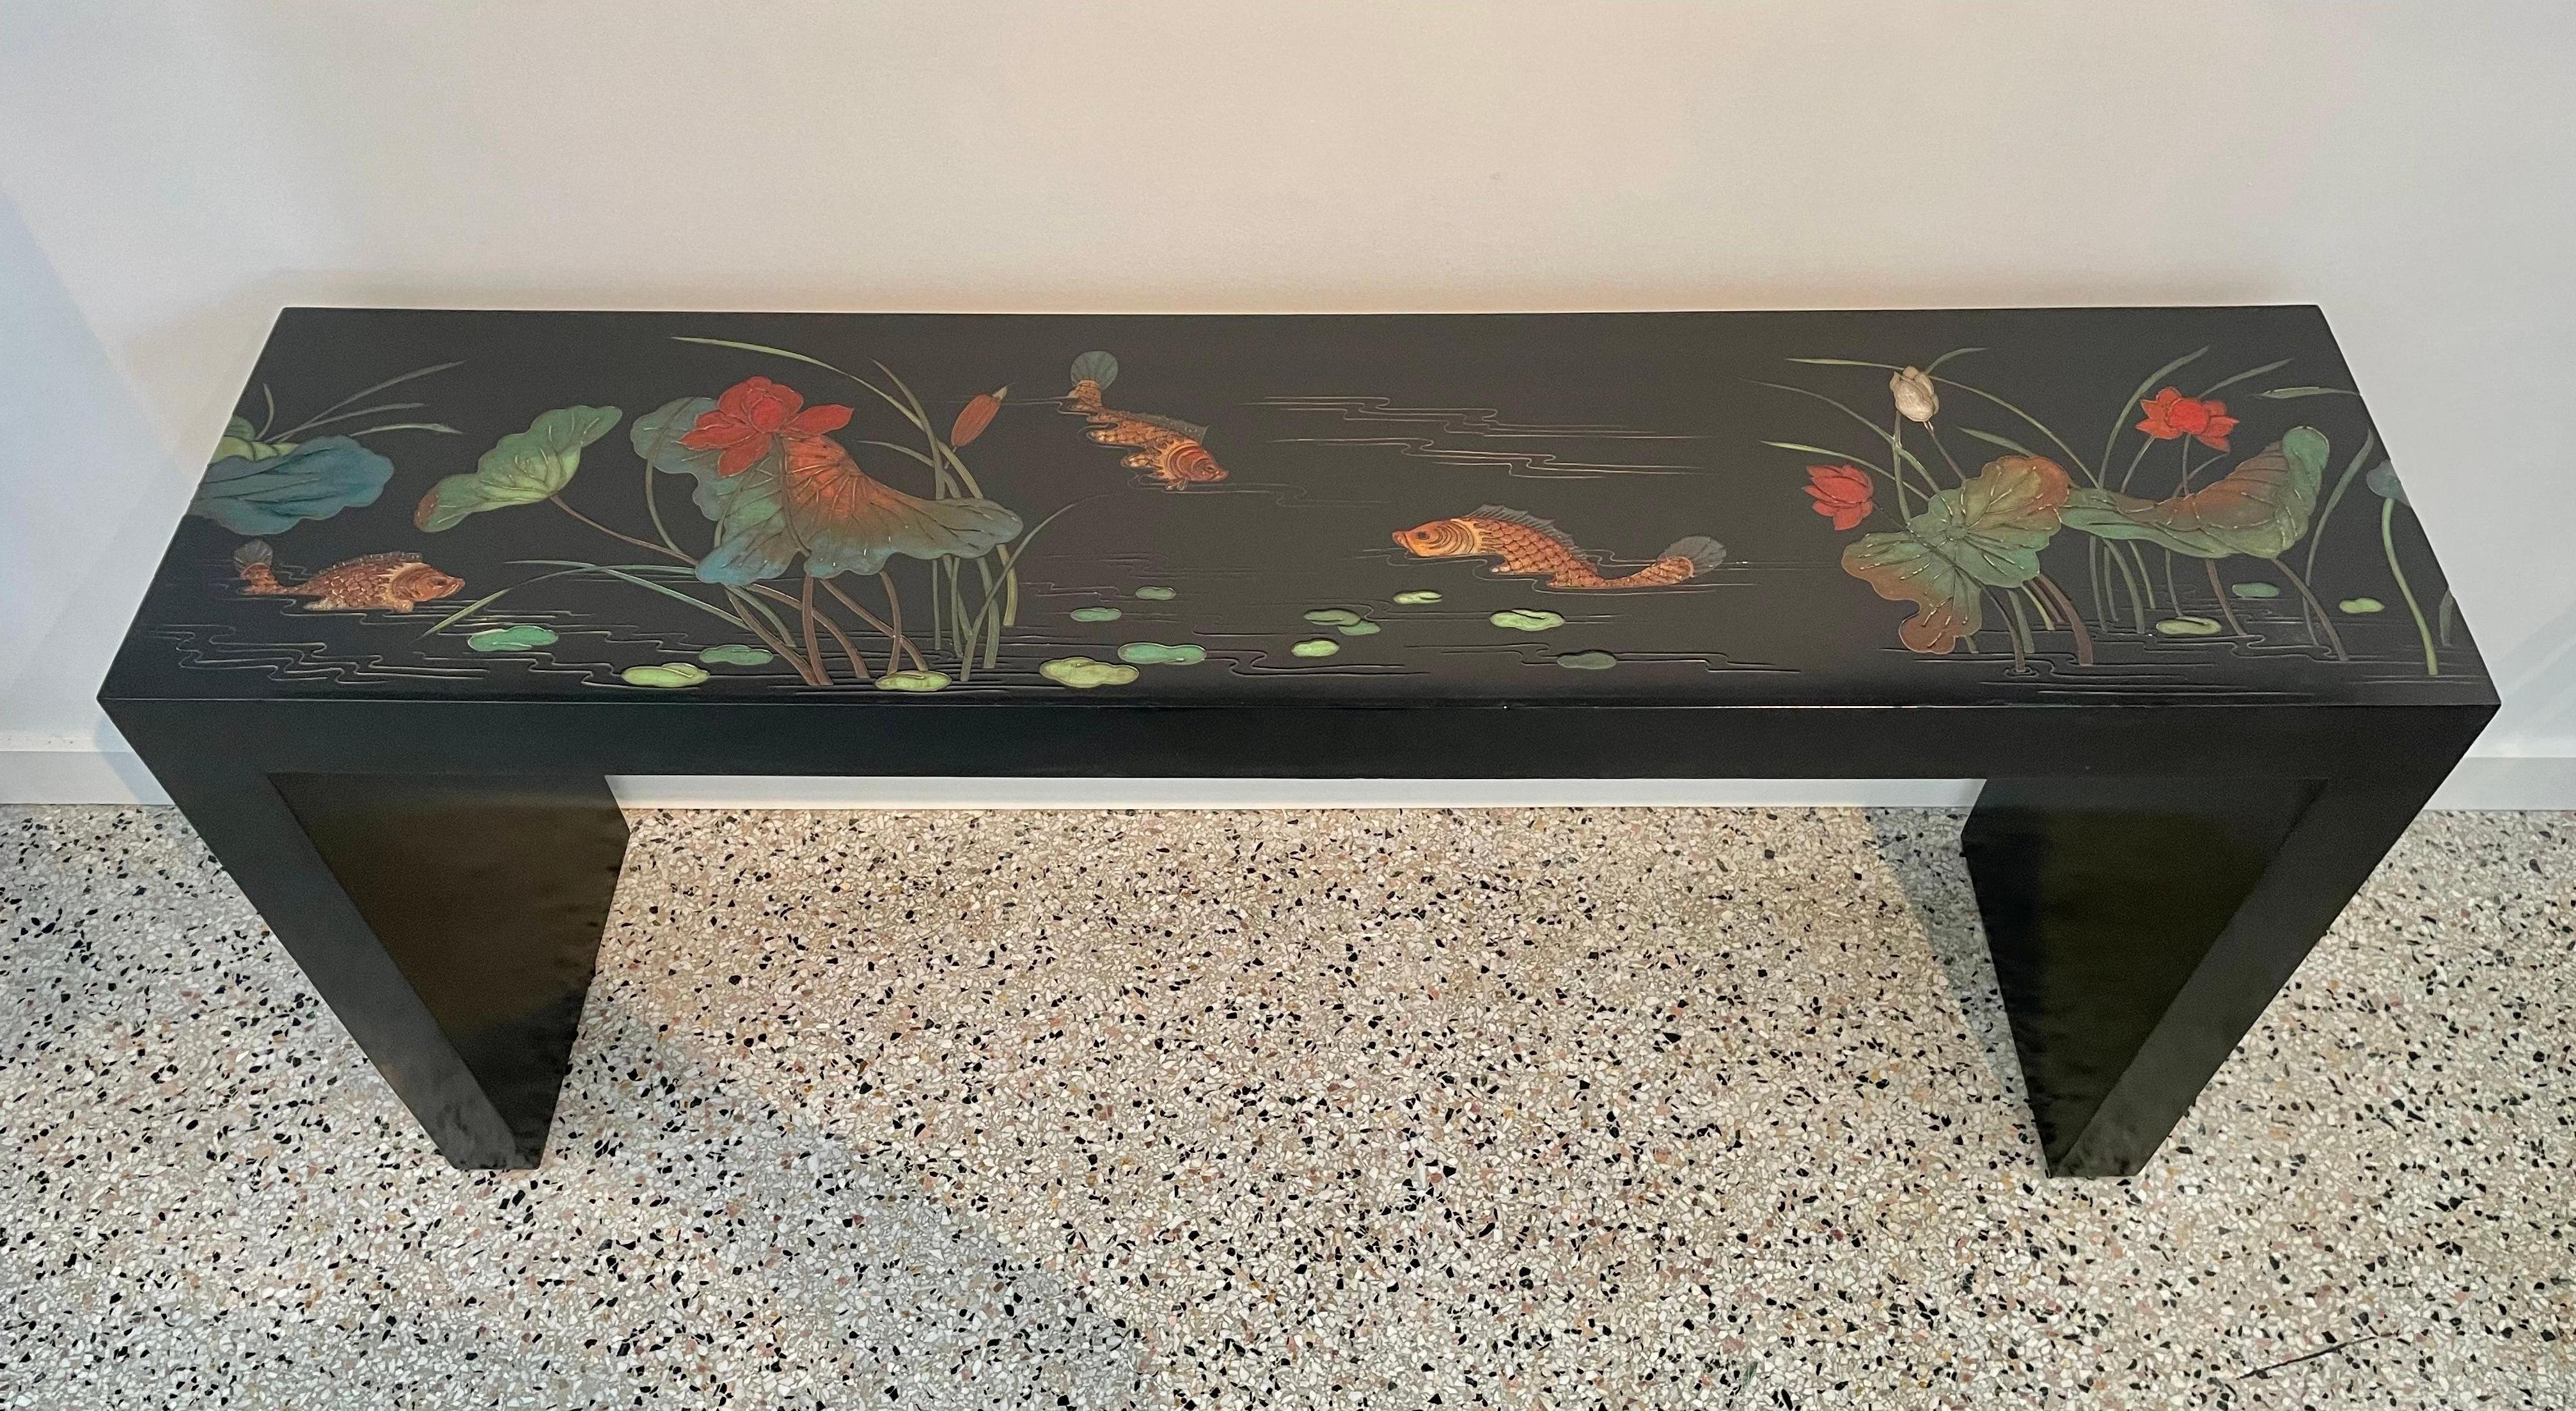 Dieser stilvolle und schicke Konsolentisch ist in Form und Details dem Art Deco in Hongkong nachempfunden.  Das Stück ist in einem Koromandel-Panel-Stil mit einem schwarz lackierten Rahmen mit stilisierten Blumen und Koi-Fischen detailliert. 

